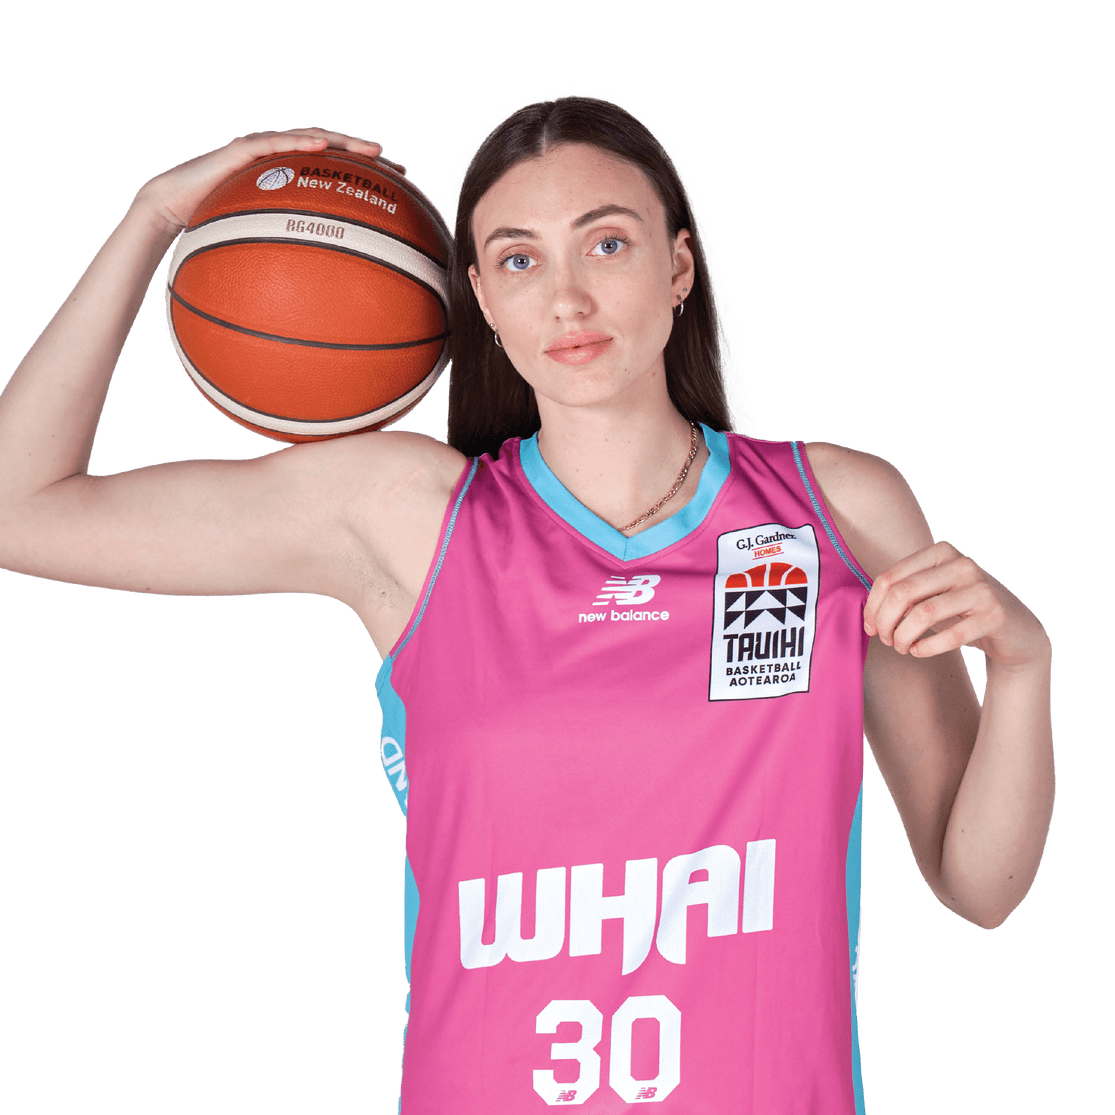 Whai Roster | Whai Basketball